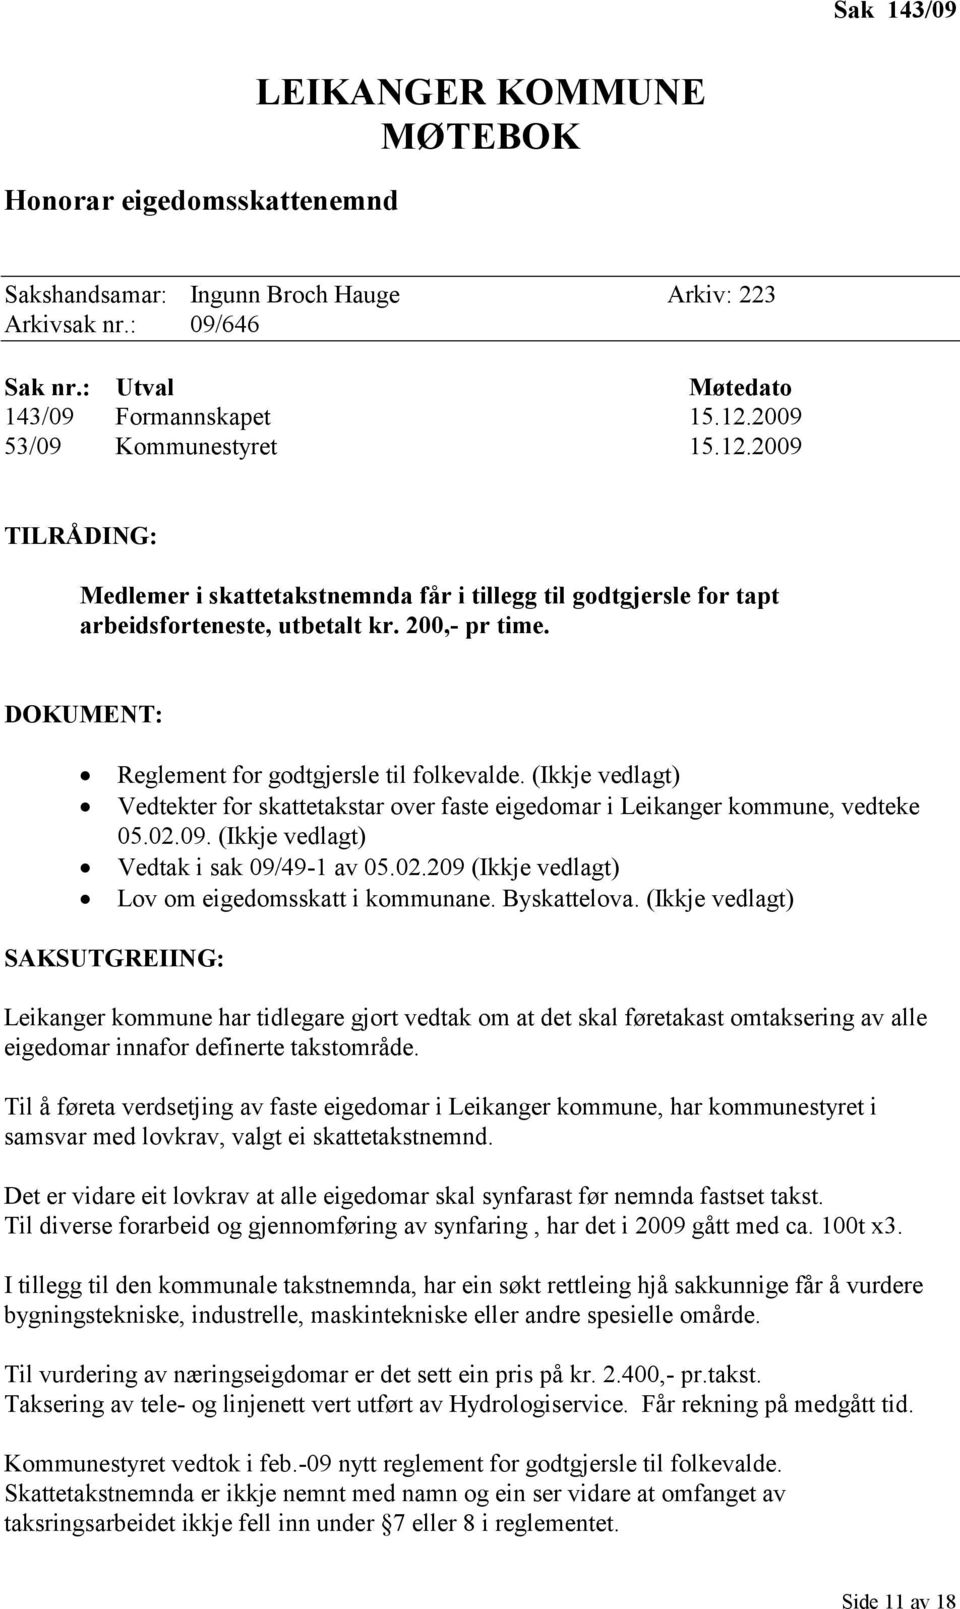 DOKUMENT: Reglement for godtgjersle til folkevalde. (Ikkje vedlagt) Vedtekter for skattetakstar over faste eigedomar i Leikanger kommune, vedteke 05.02.09. (Ikkje vedlagt) Vedtak i sak 09/49-1 av 05.